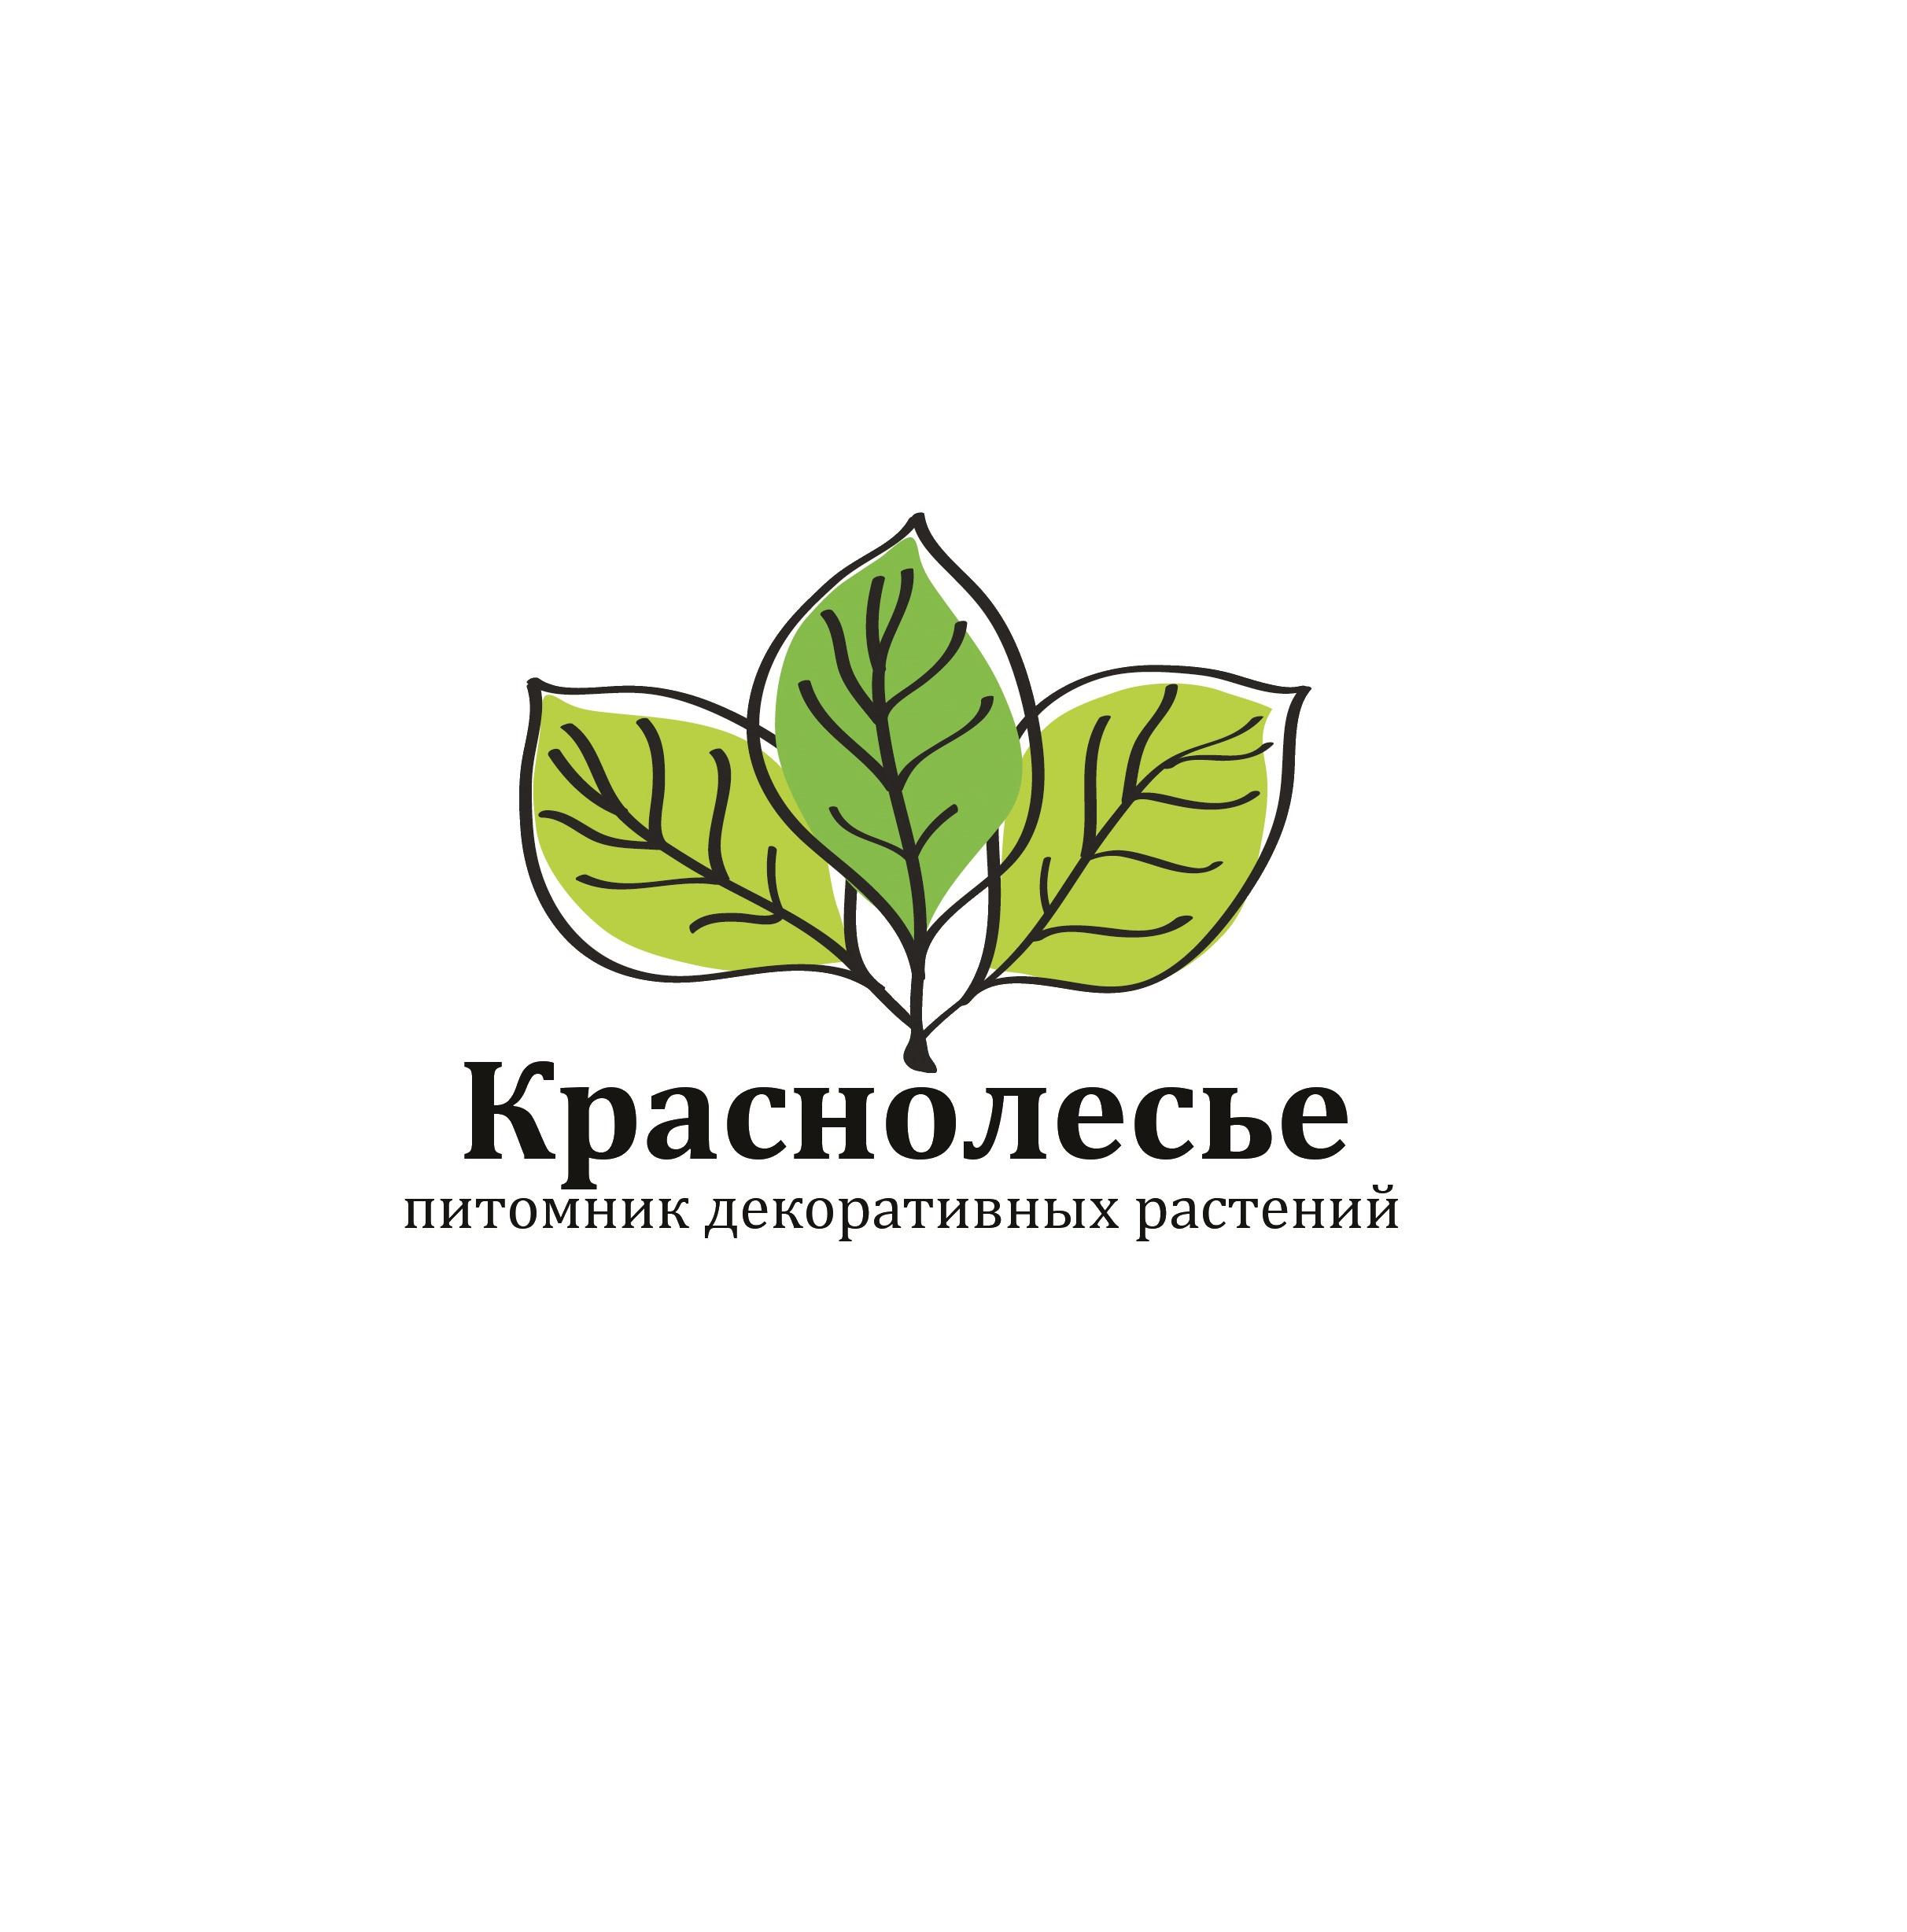  Питомник декоративных растений «Краснолесье», садовые центры «Ботаник» (    ) 